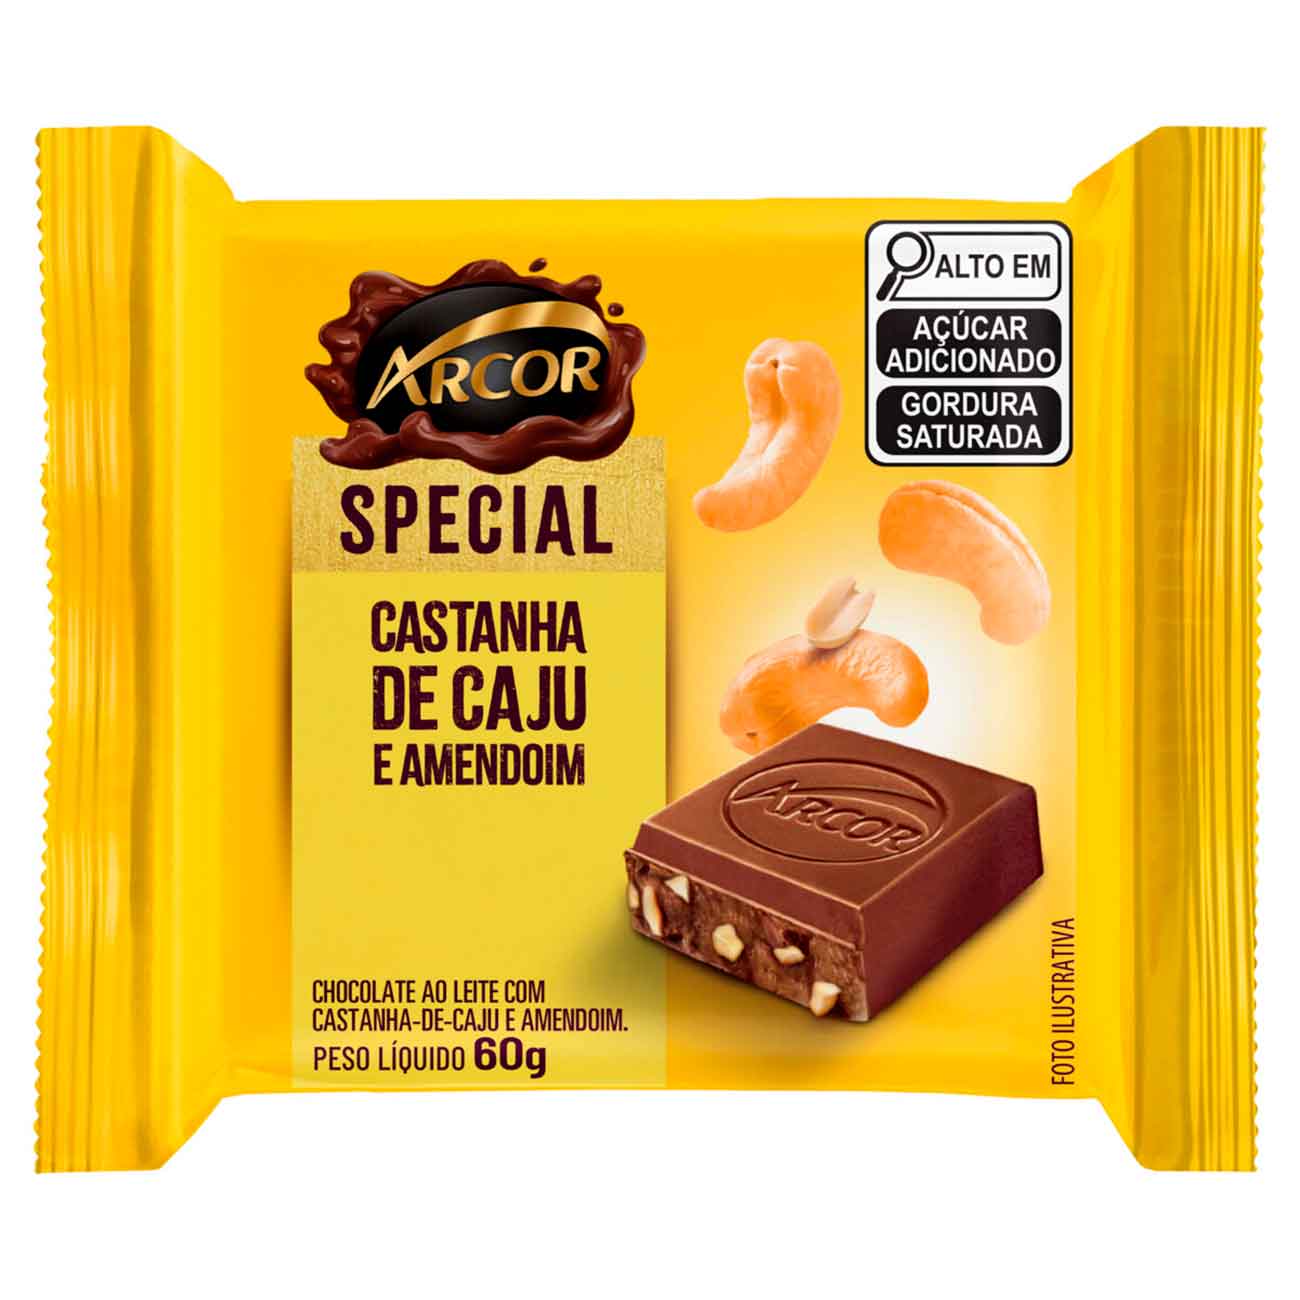 Chocolate Arcor Special ao Leite com Castanha-de-Caju e Amendoim 720gr | Caixa com 12 unidades